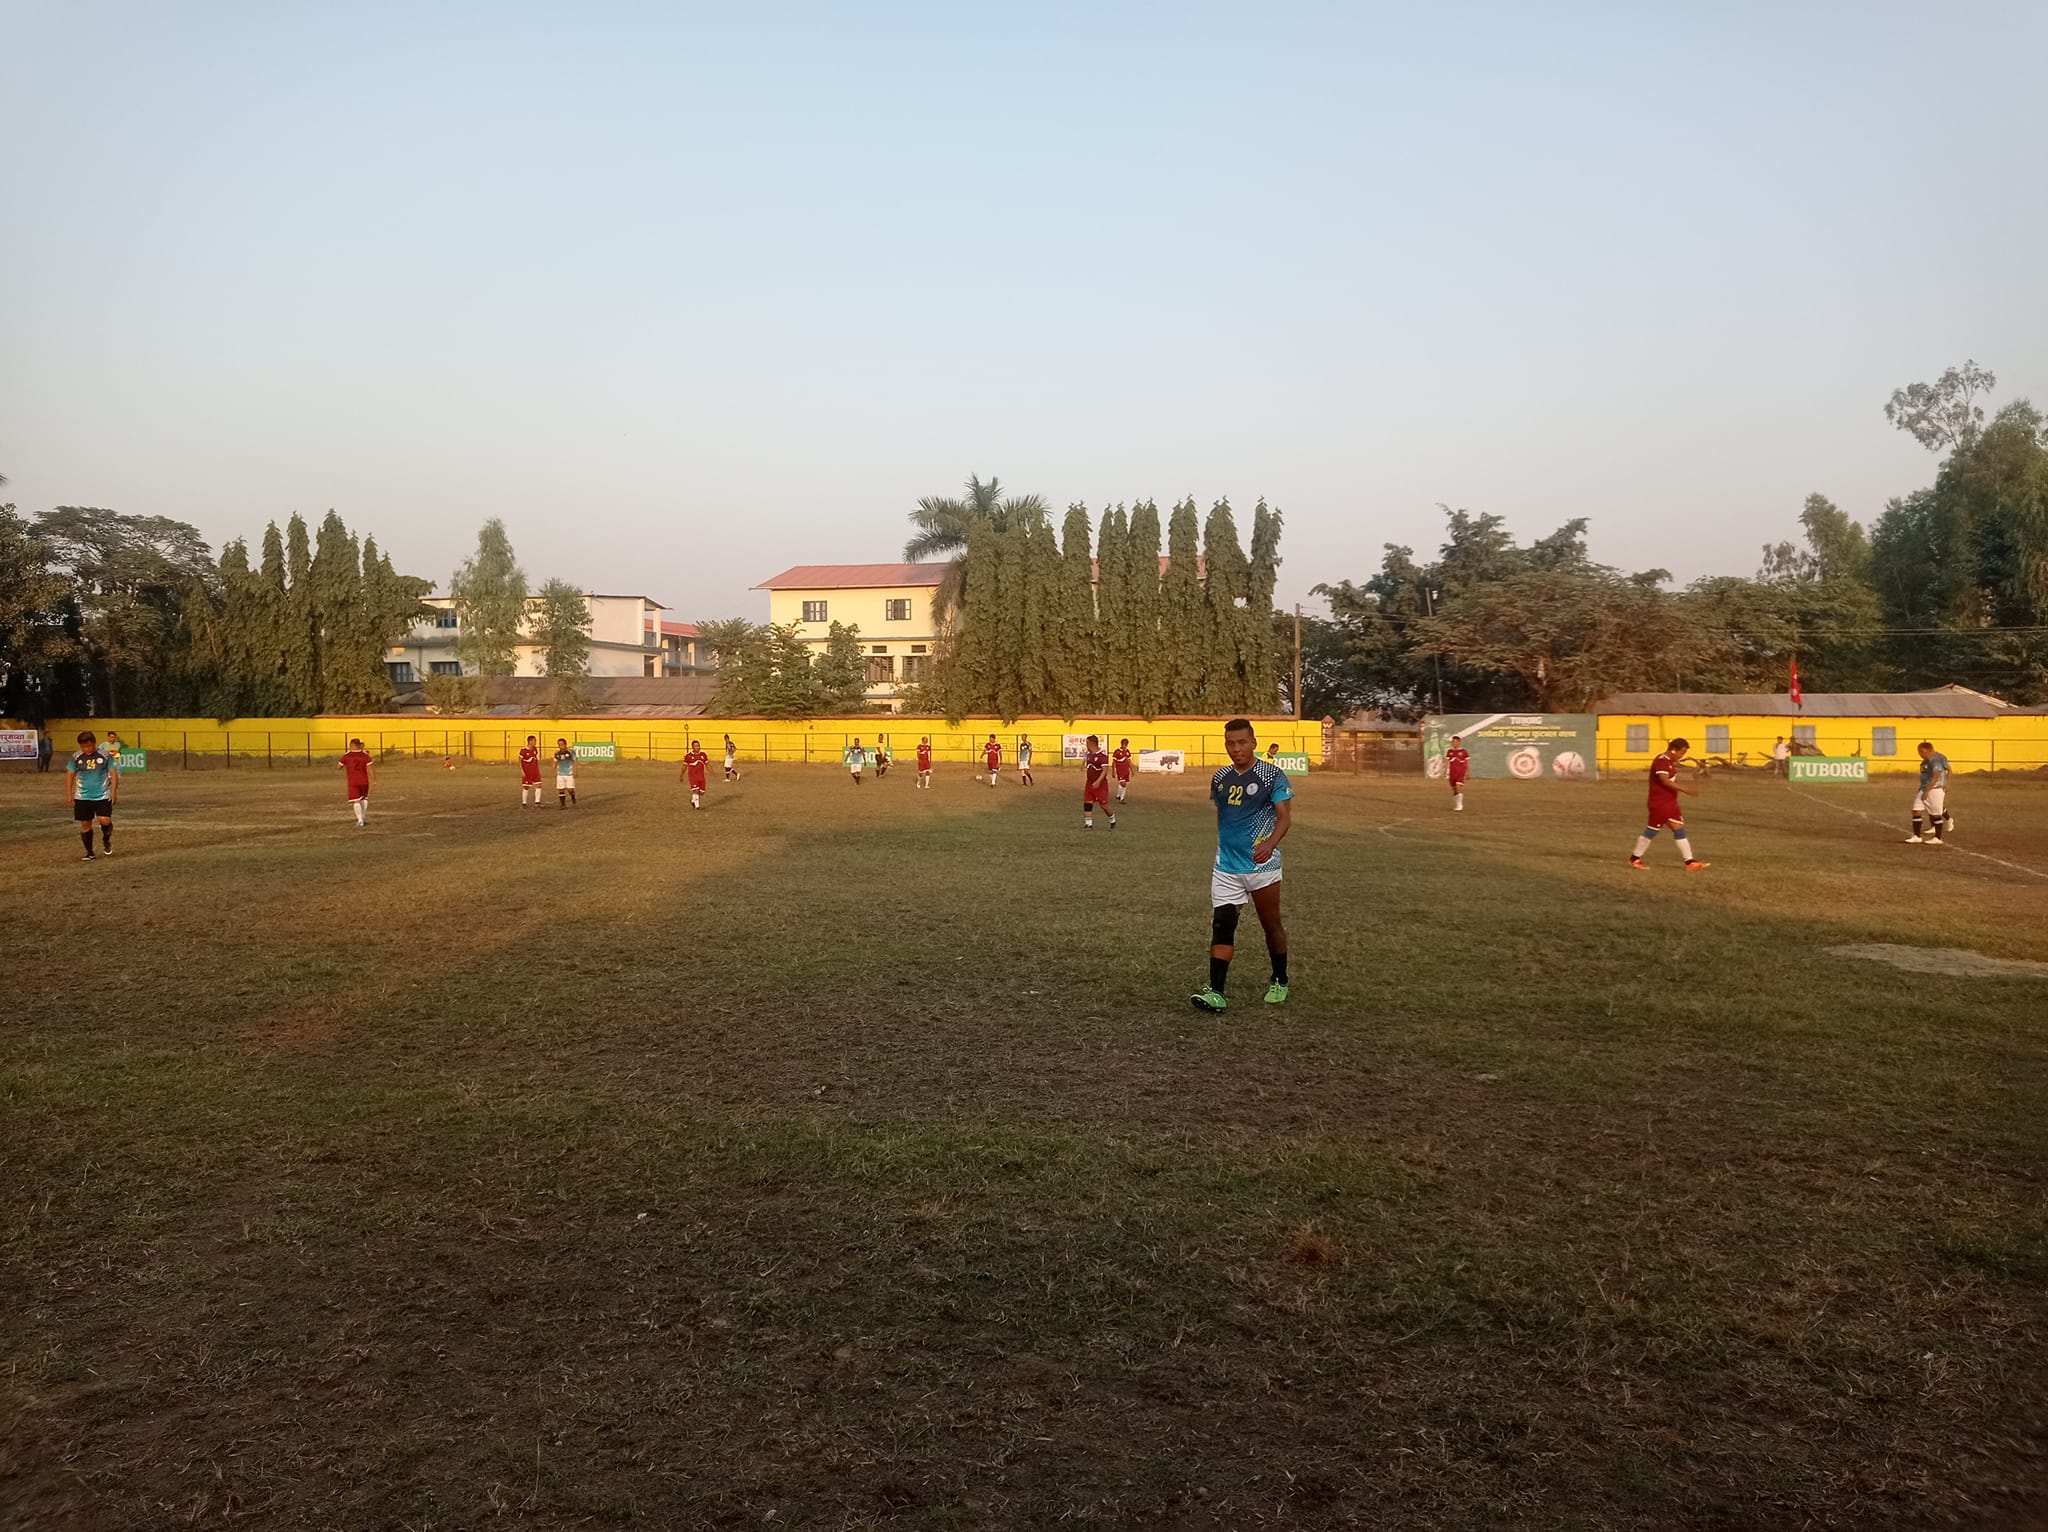 उर्लाबारीमा भेट्रान फुटबल प्रतियोगिता सुरु, उद्घाटन खेलमा झिलझिले विजयी